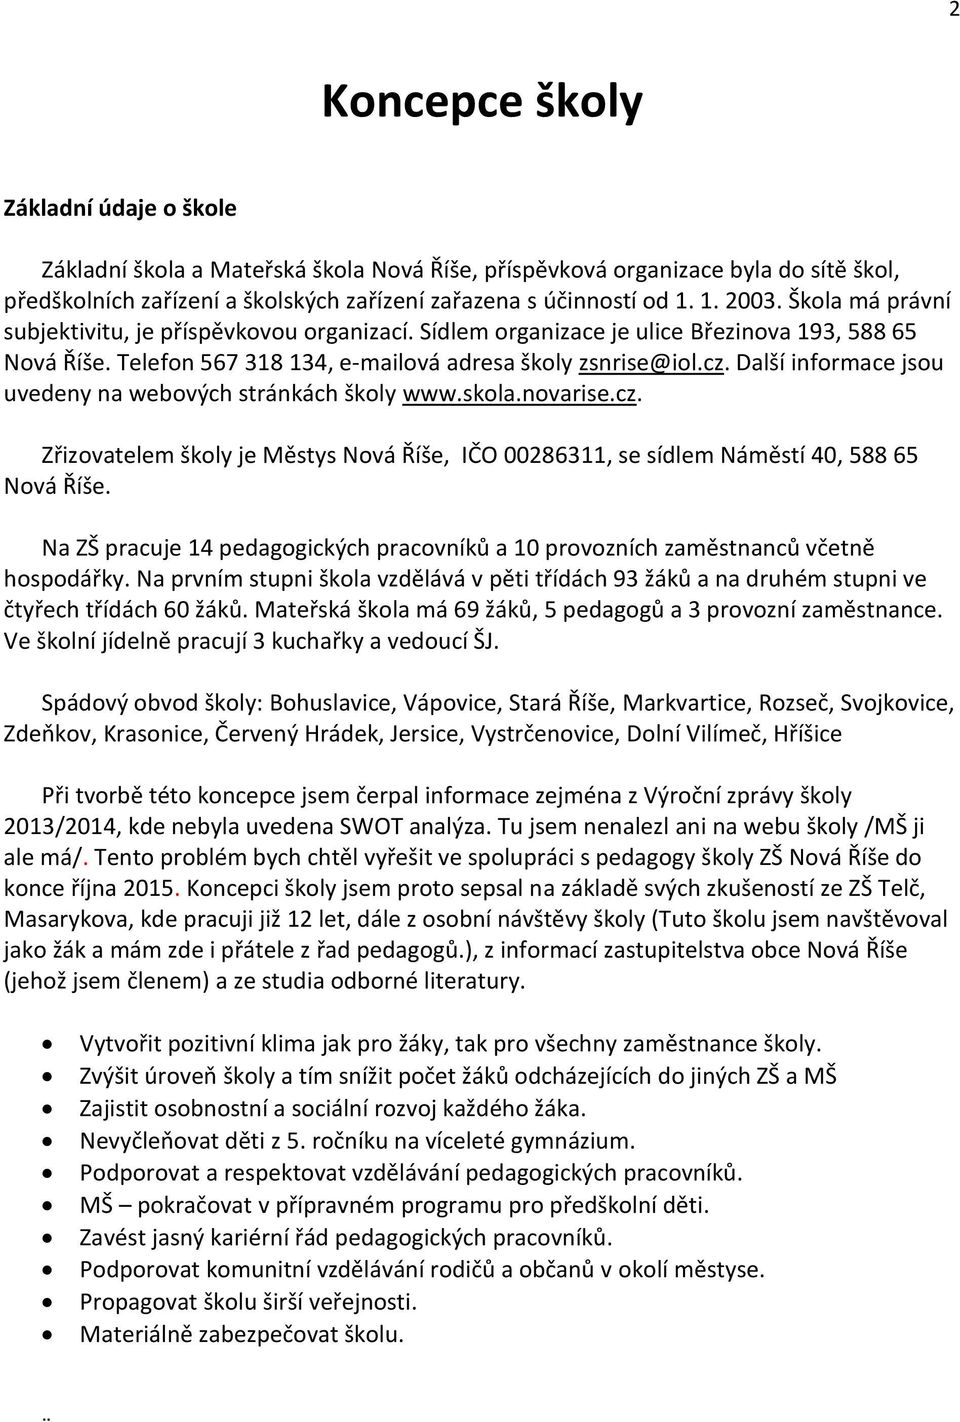 Další informace jsou uvedeny na webových stránkách školy www.skola.novarise.cz. Zřizovatelem školy je Městys Nová Říše, IČO 00286311, se sídlem Náměstí 40, 588 65 Nová Říše.